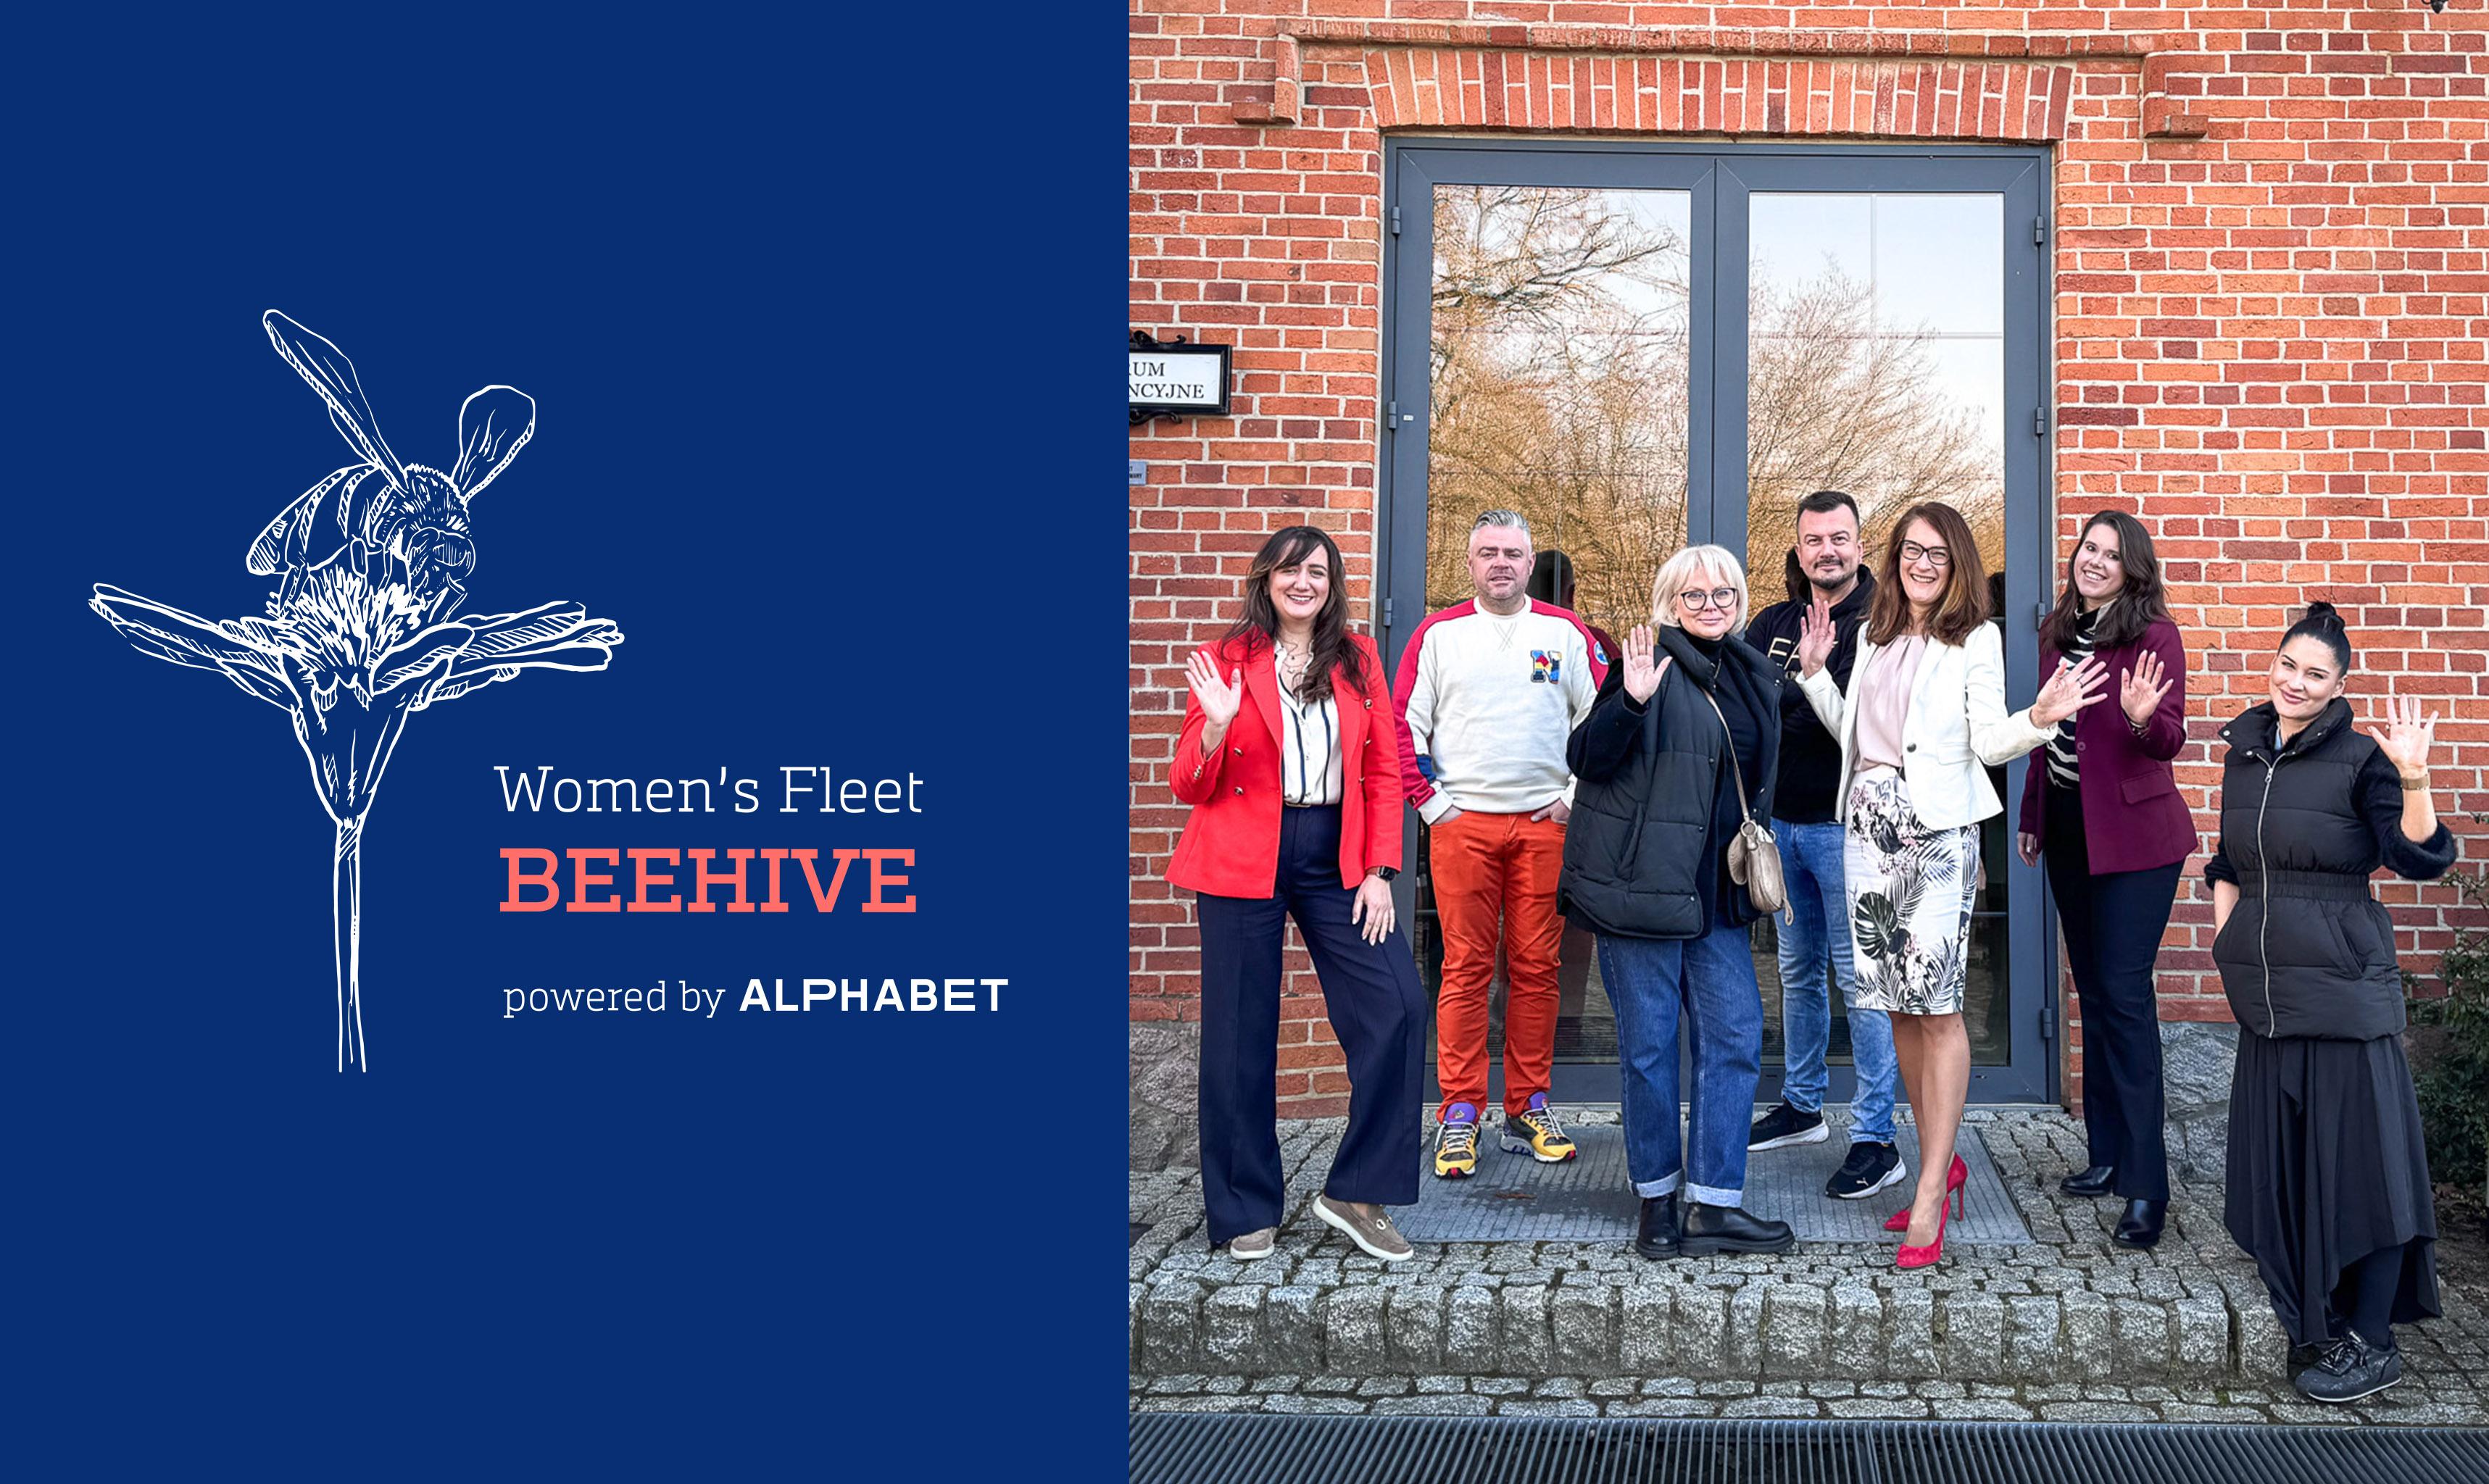 1. Women's Fleet BEEHIVE